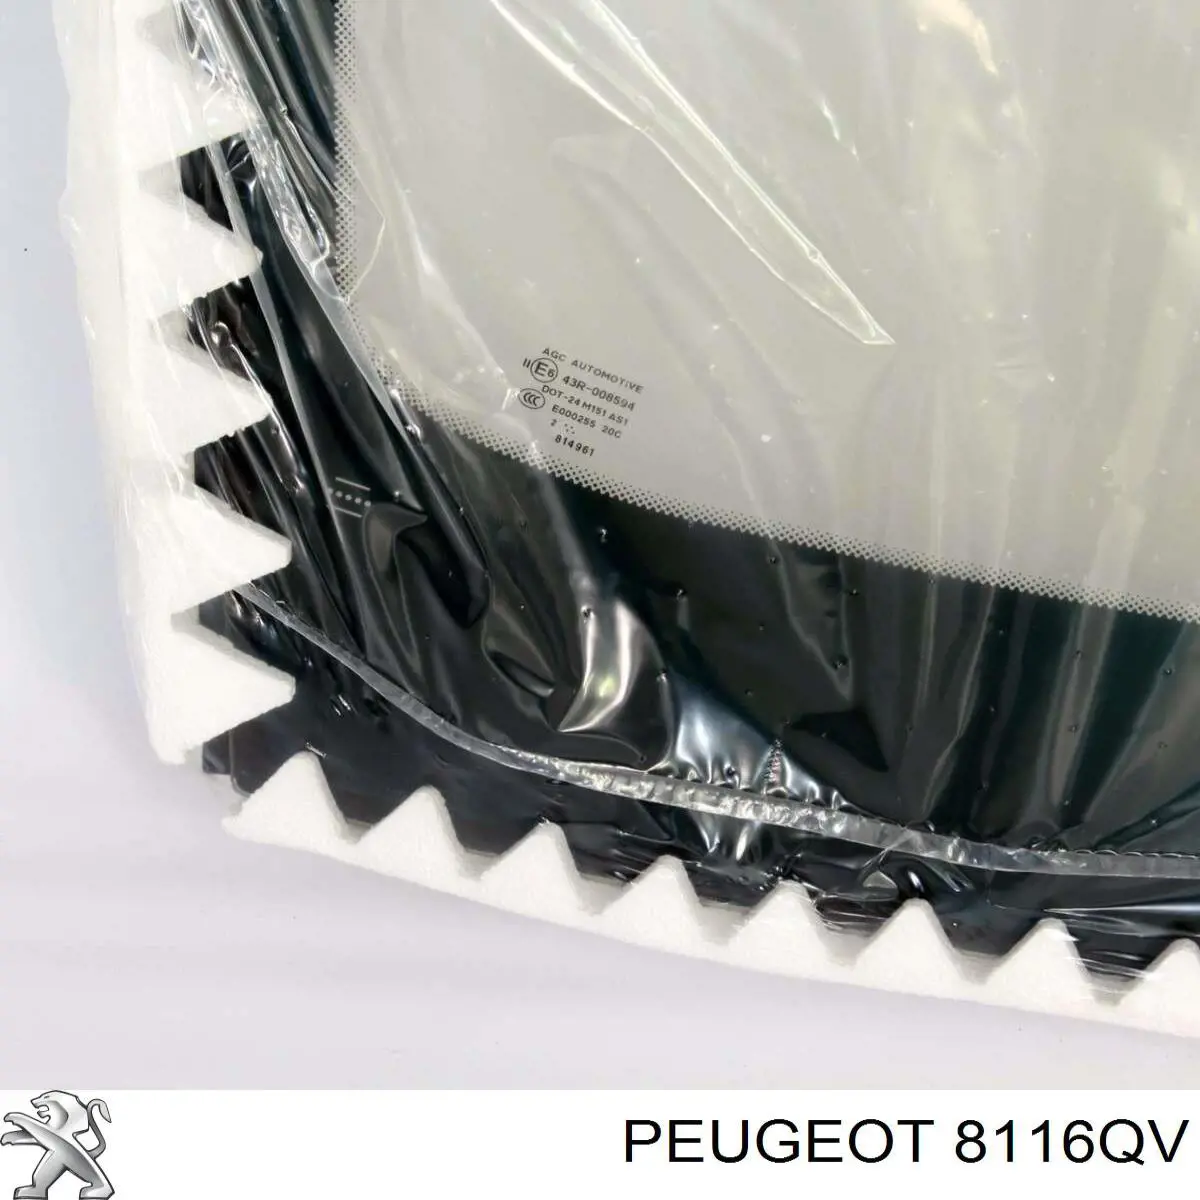 8116QV Peugeot/Citroen parabrisas